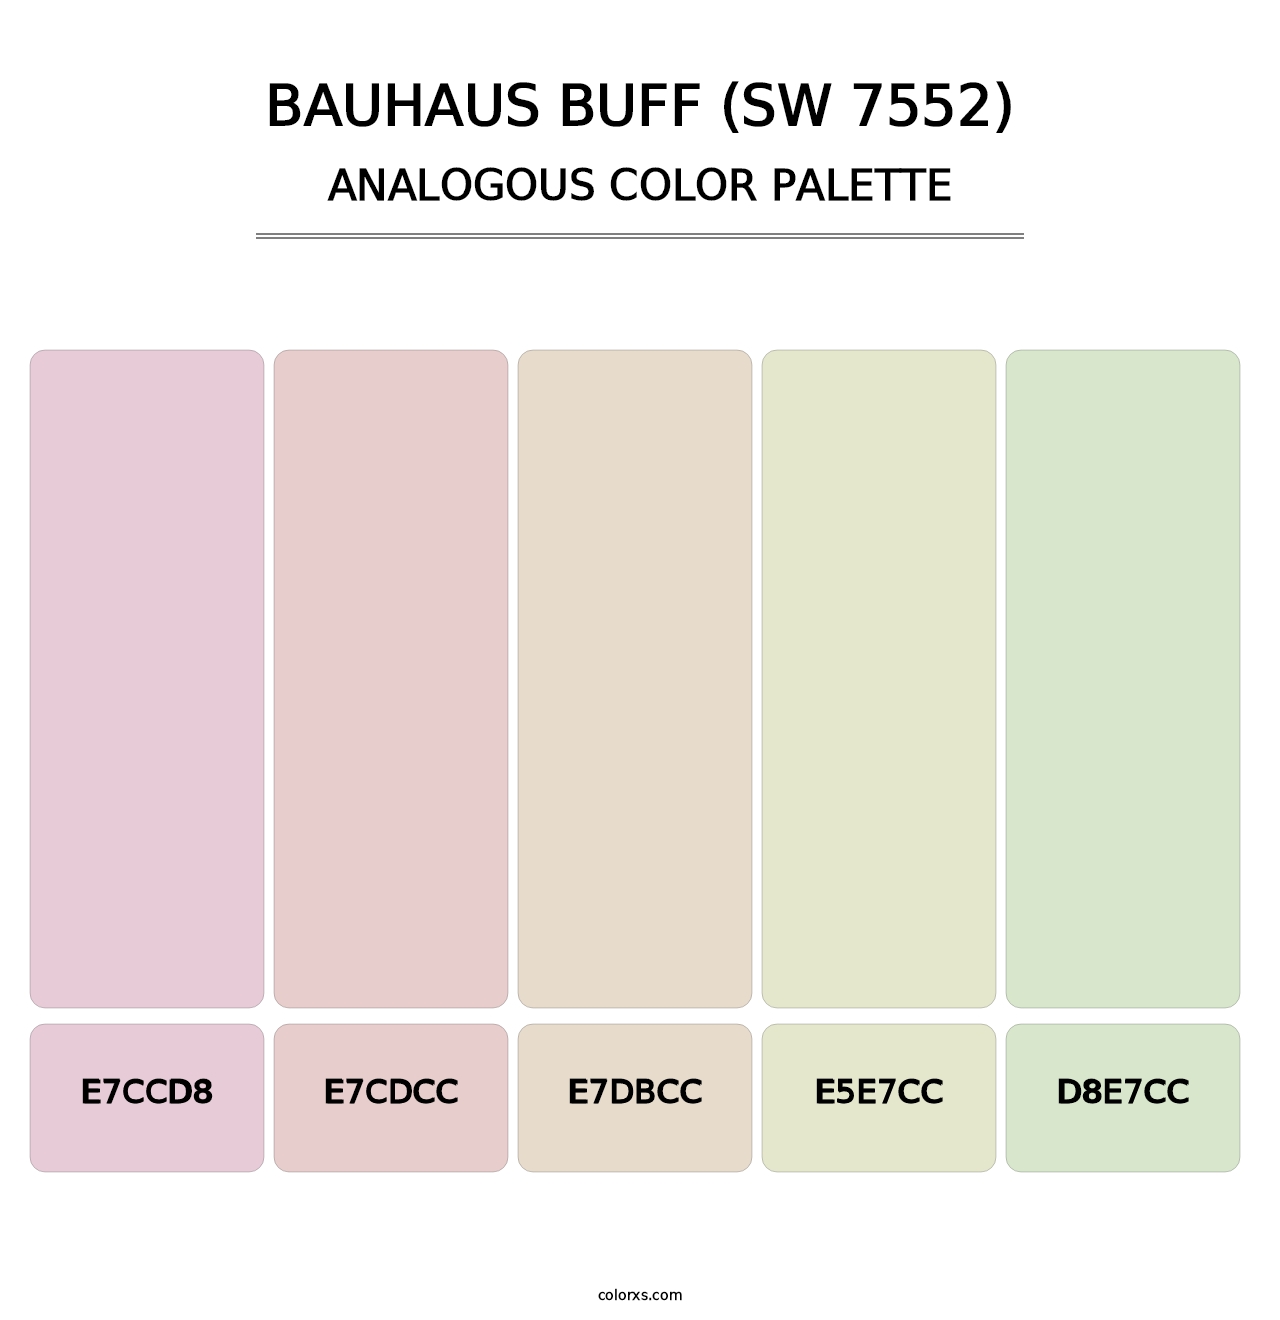 Bauhaus Buff (SW 7552) - Analogous Color Palette